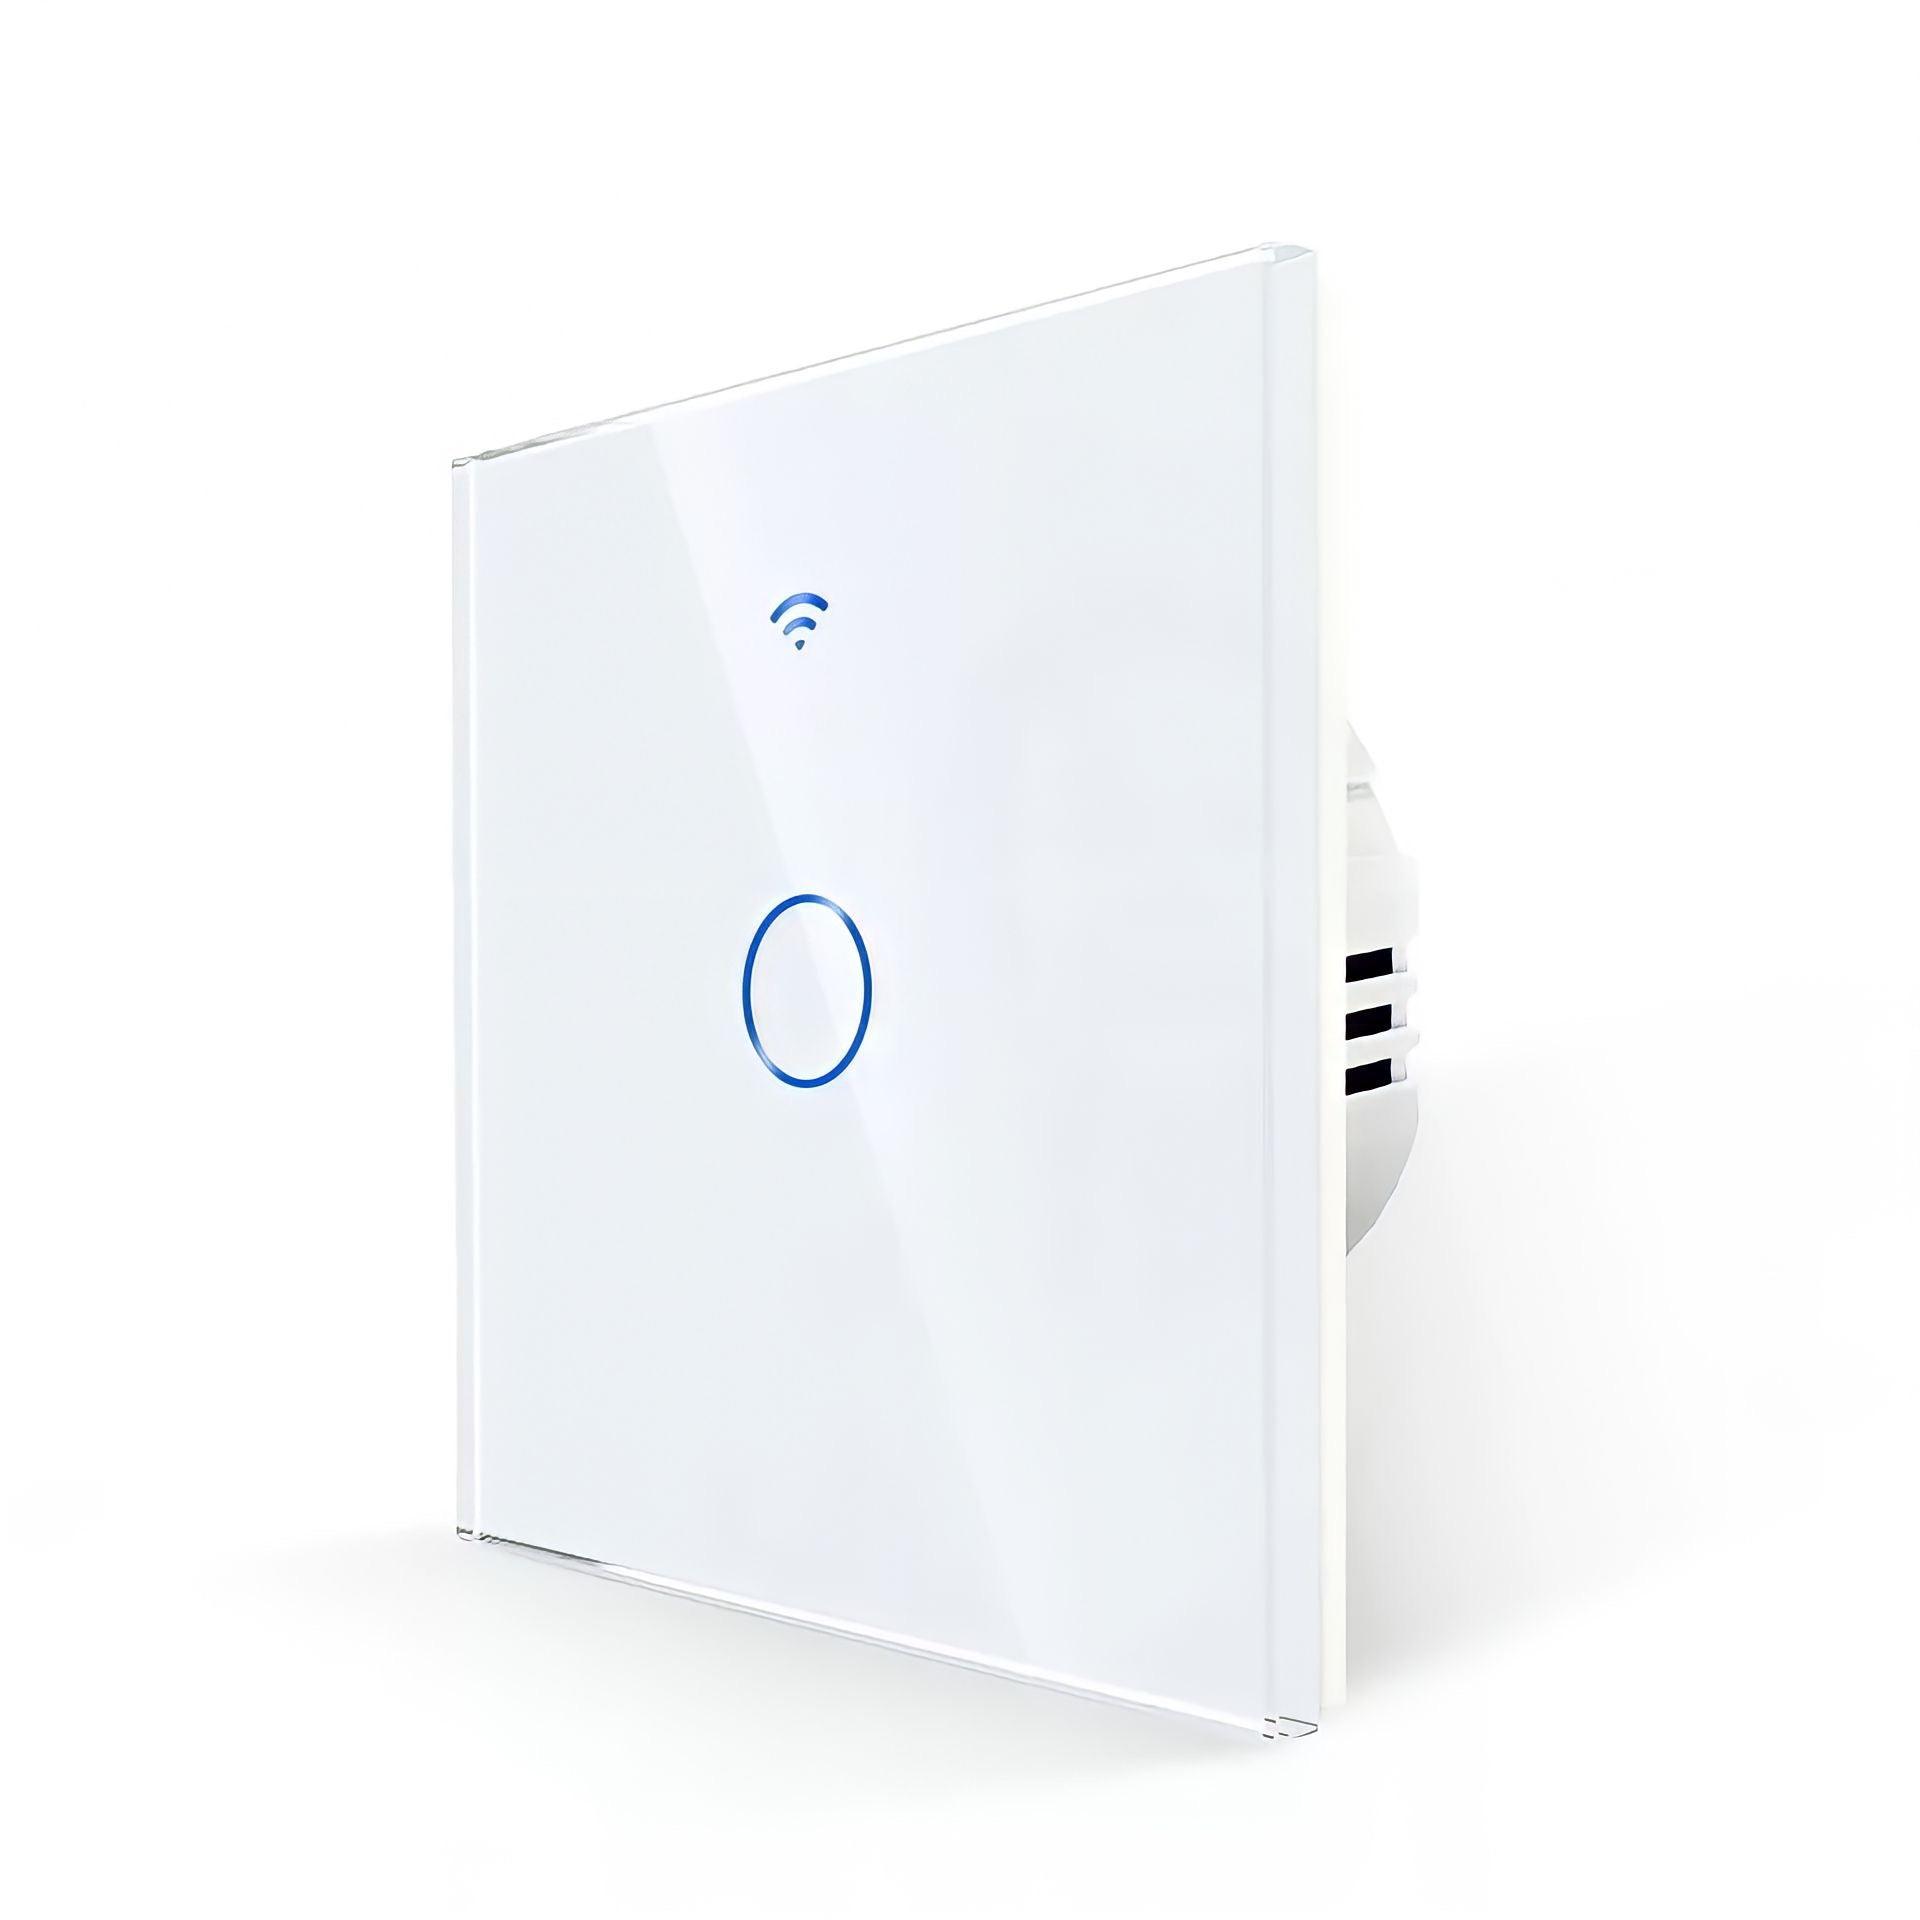 Lichtschalter Panel Smart Home - BUYnBLUE 